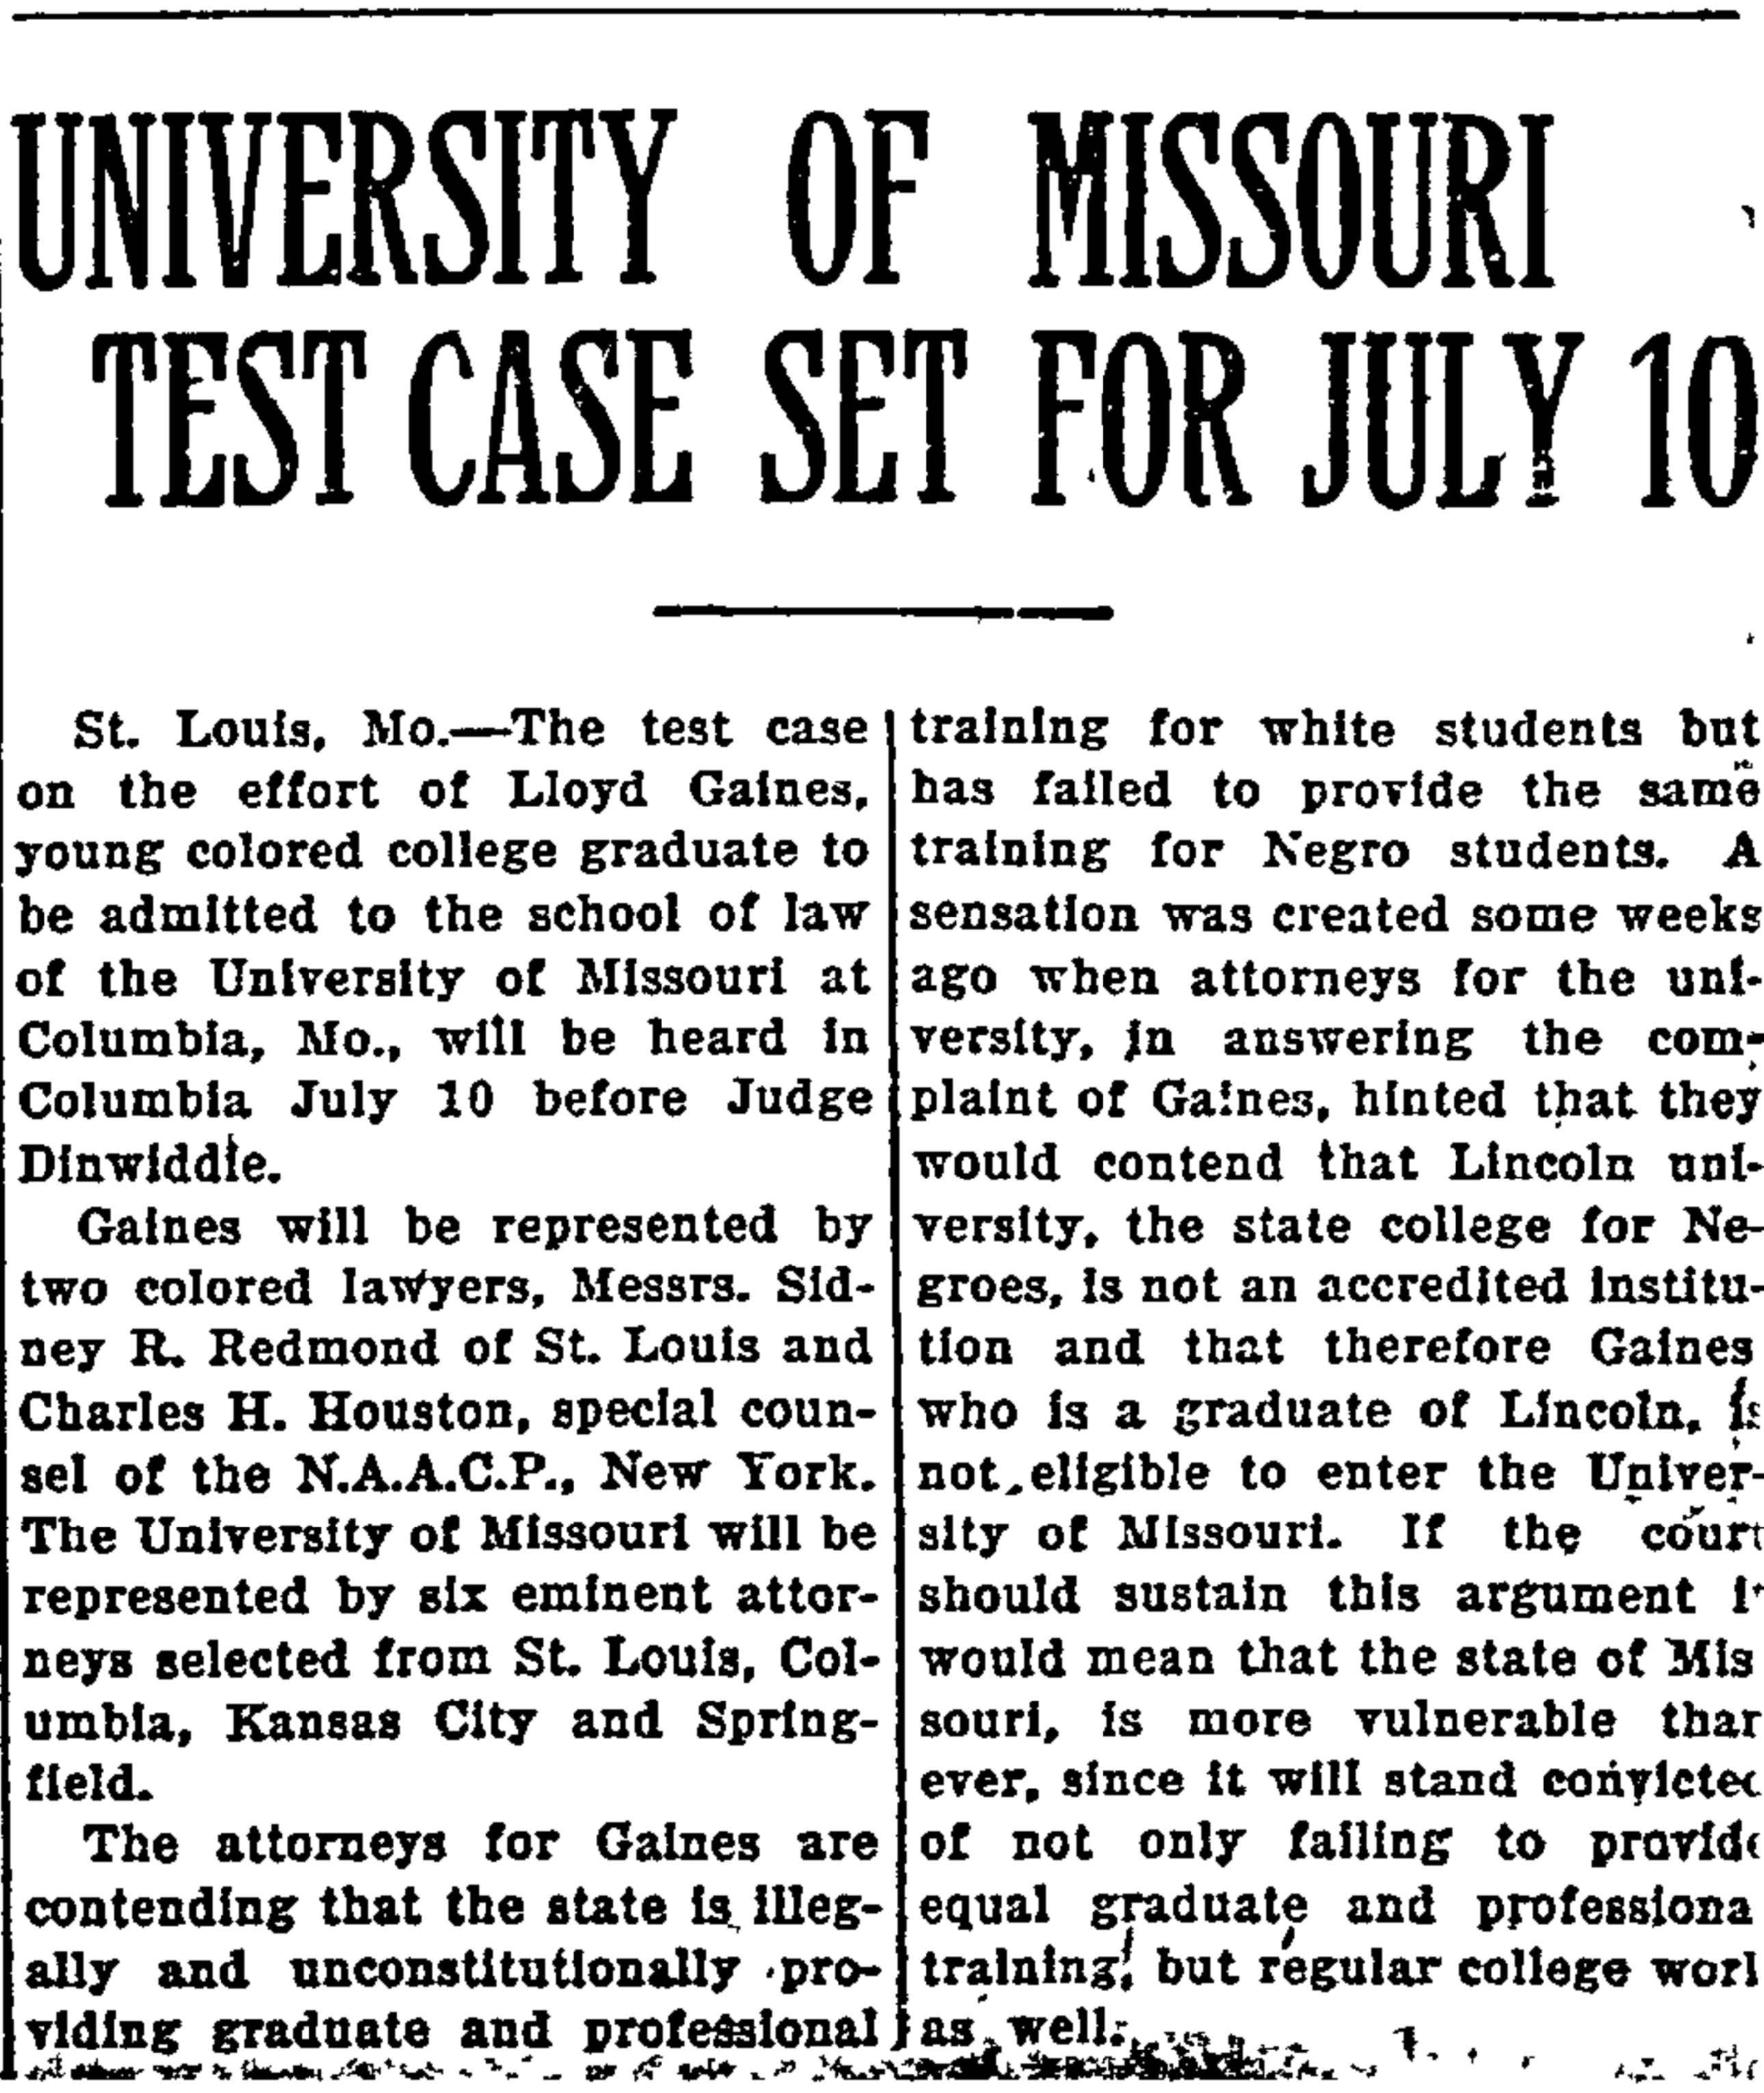 Kansas Whip (Topeka, Kansas). July 3, 1936. From Black Life in America.